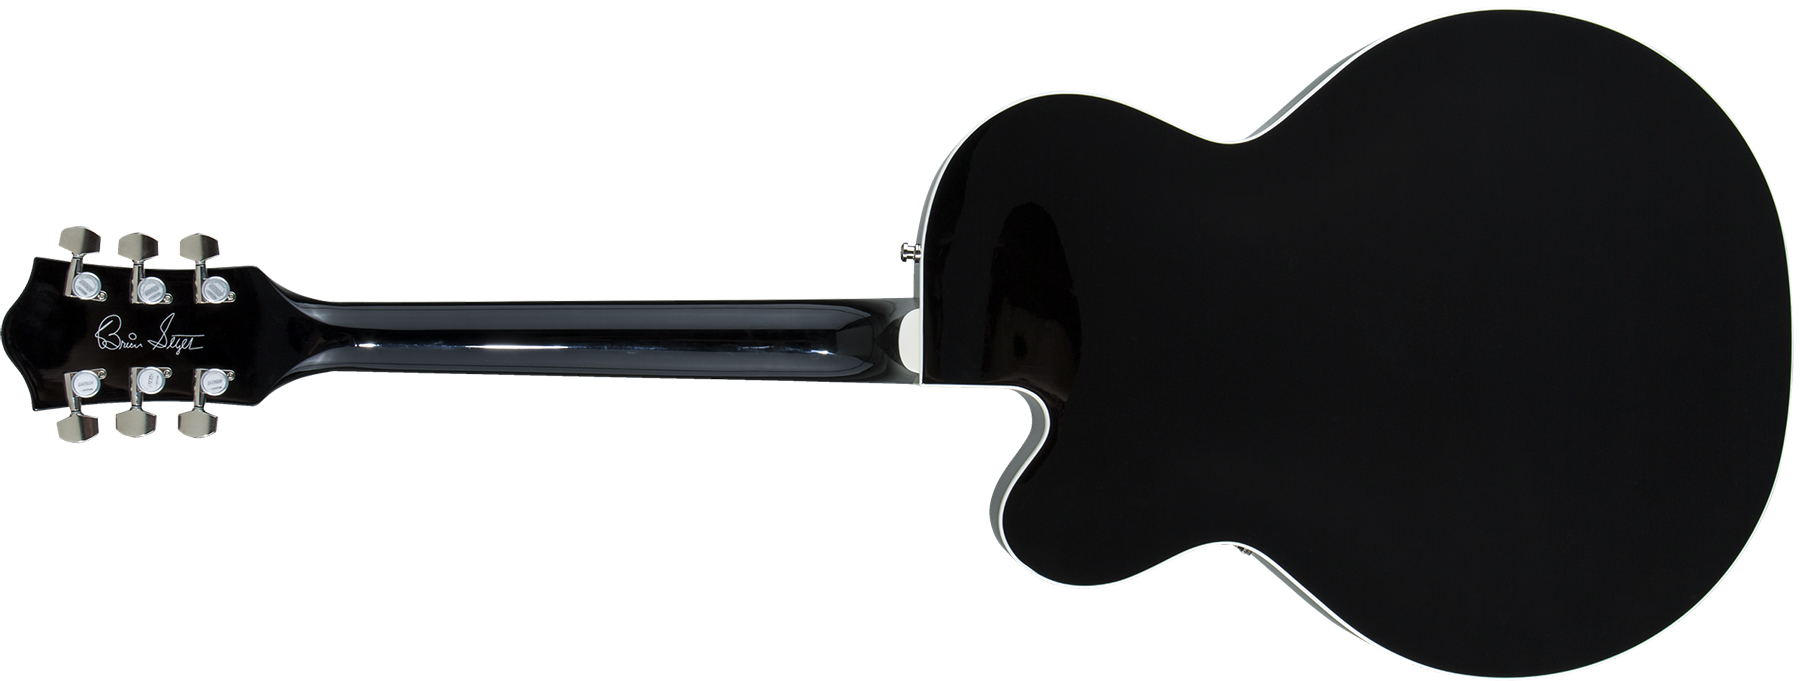 Gretsch Brian Setzer G6120t-bsnsh Nashville Japon Signature Bigsby Eb - Black Lacquer - Semi hollow elektriche gitaar - Variation 1